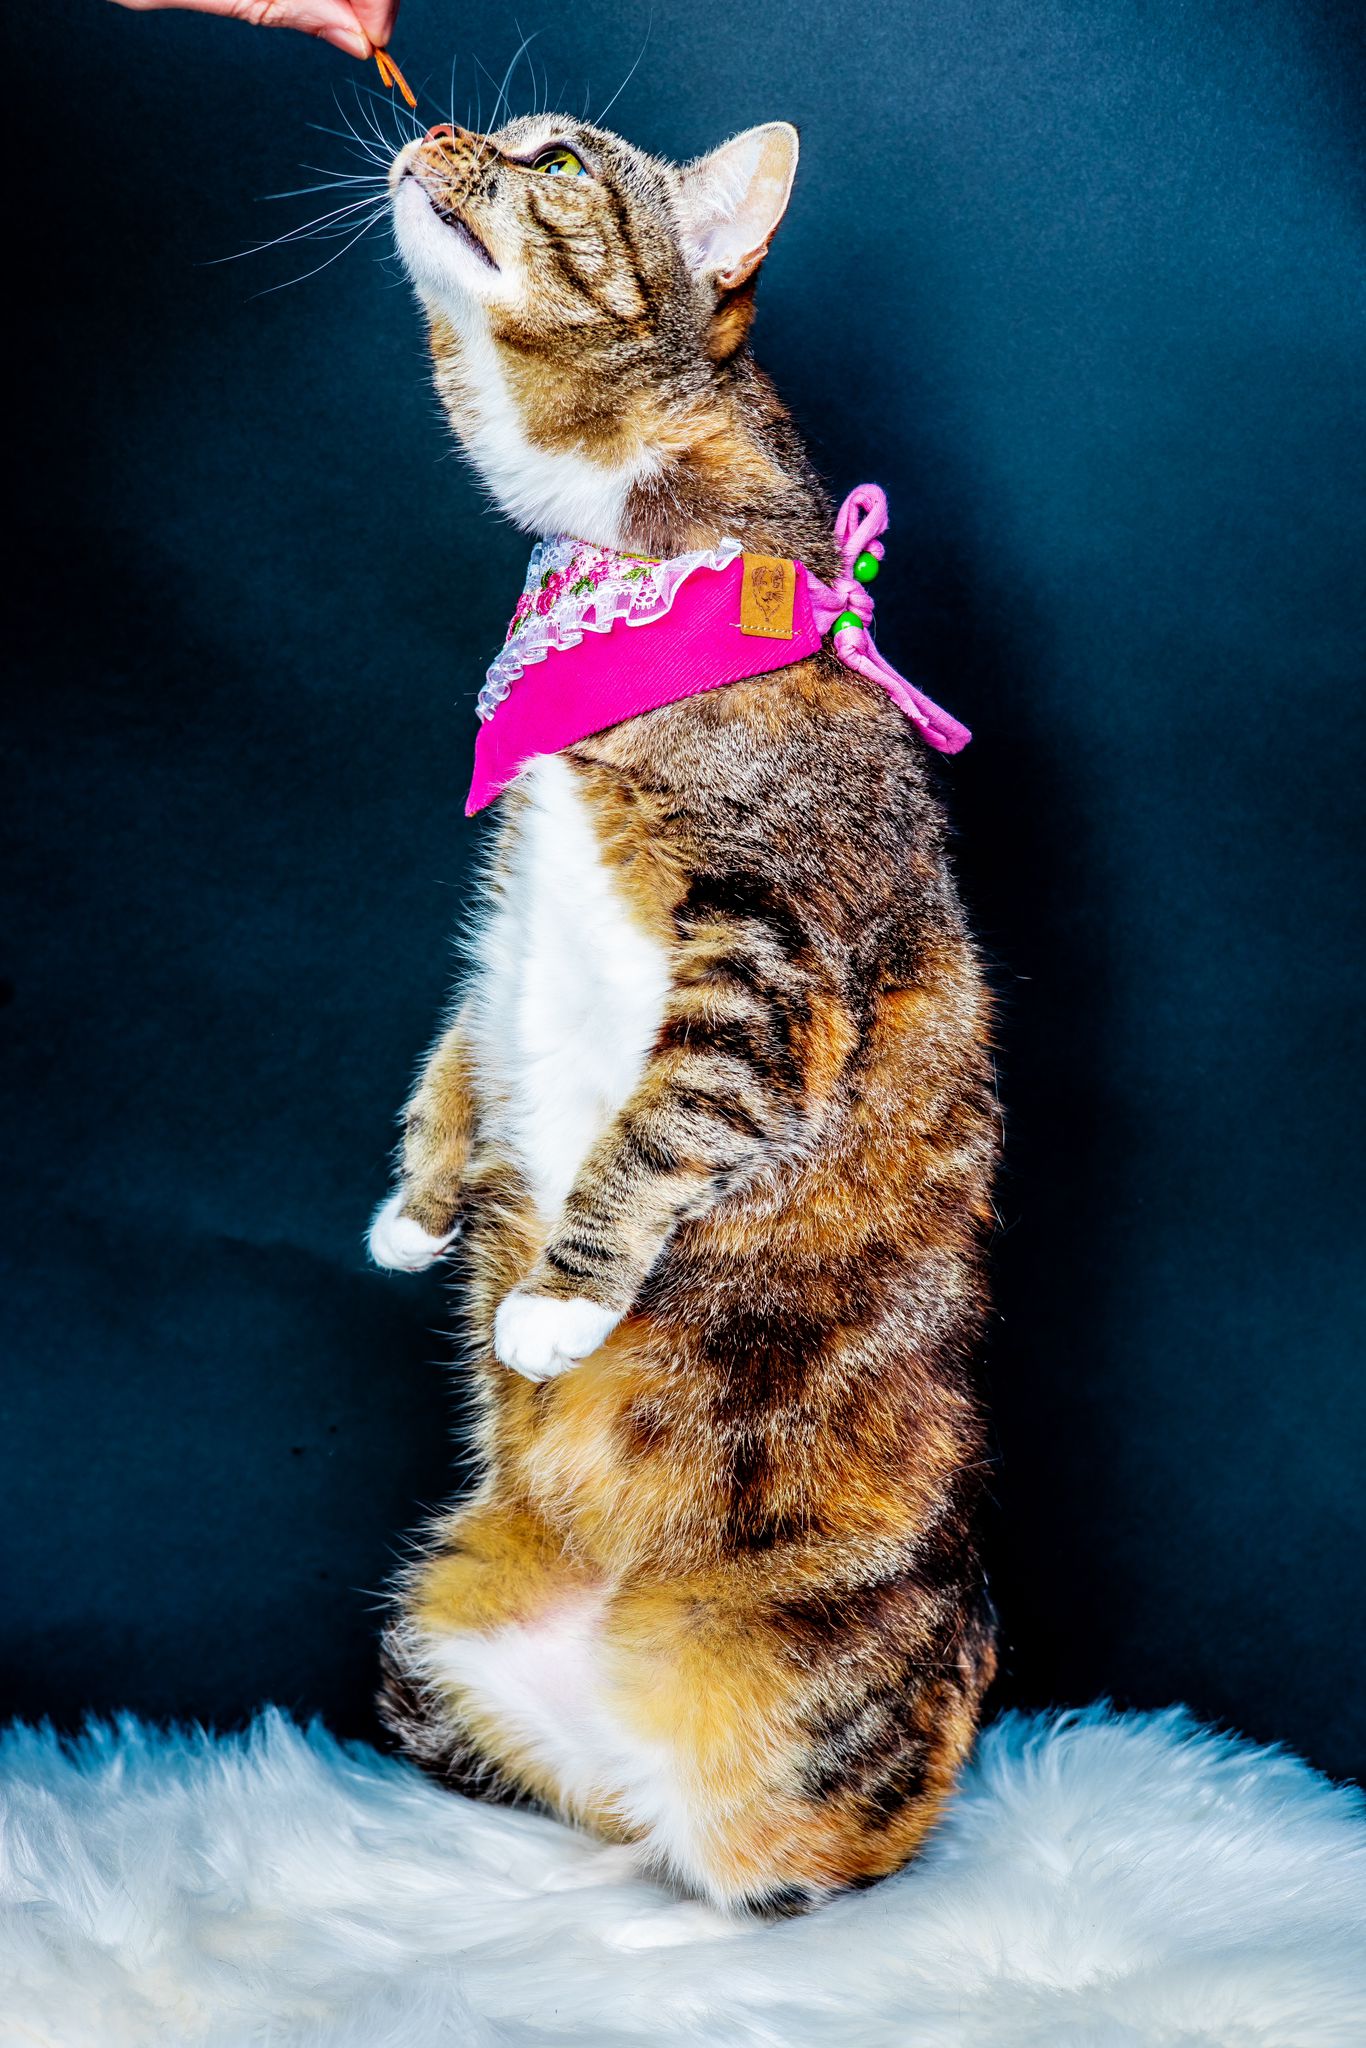 Katze trägt Katzenhalstuch zum Binden in pink beim Fotoshooting